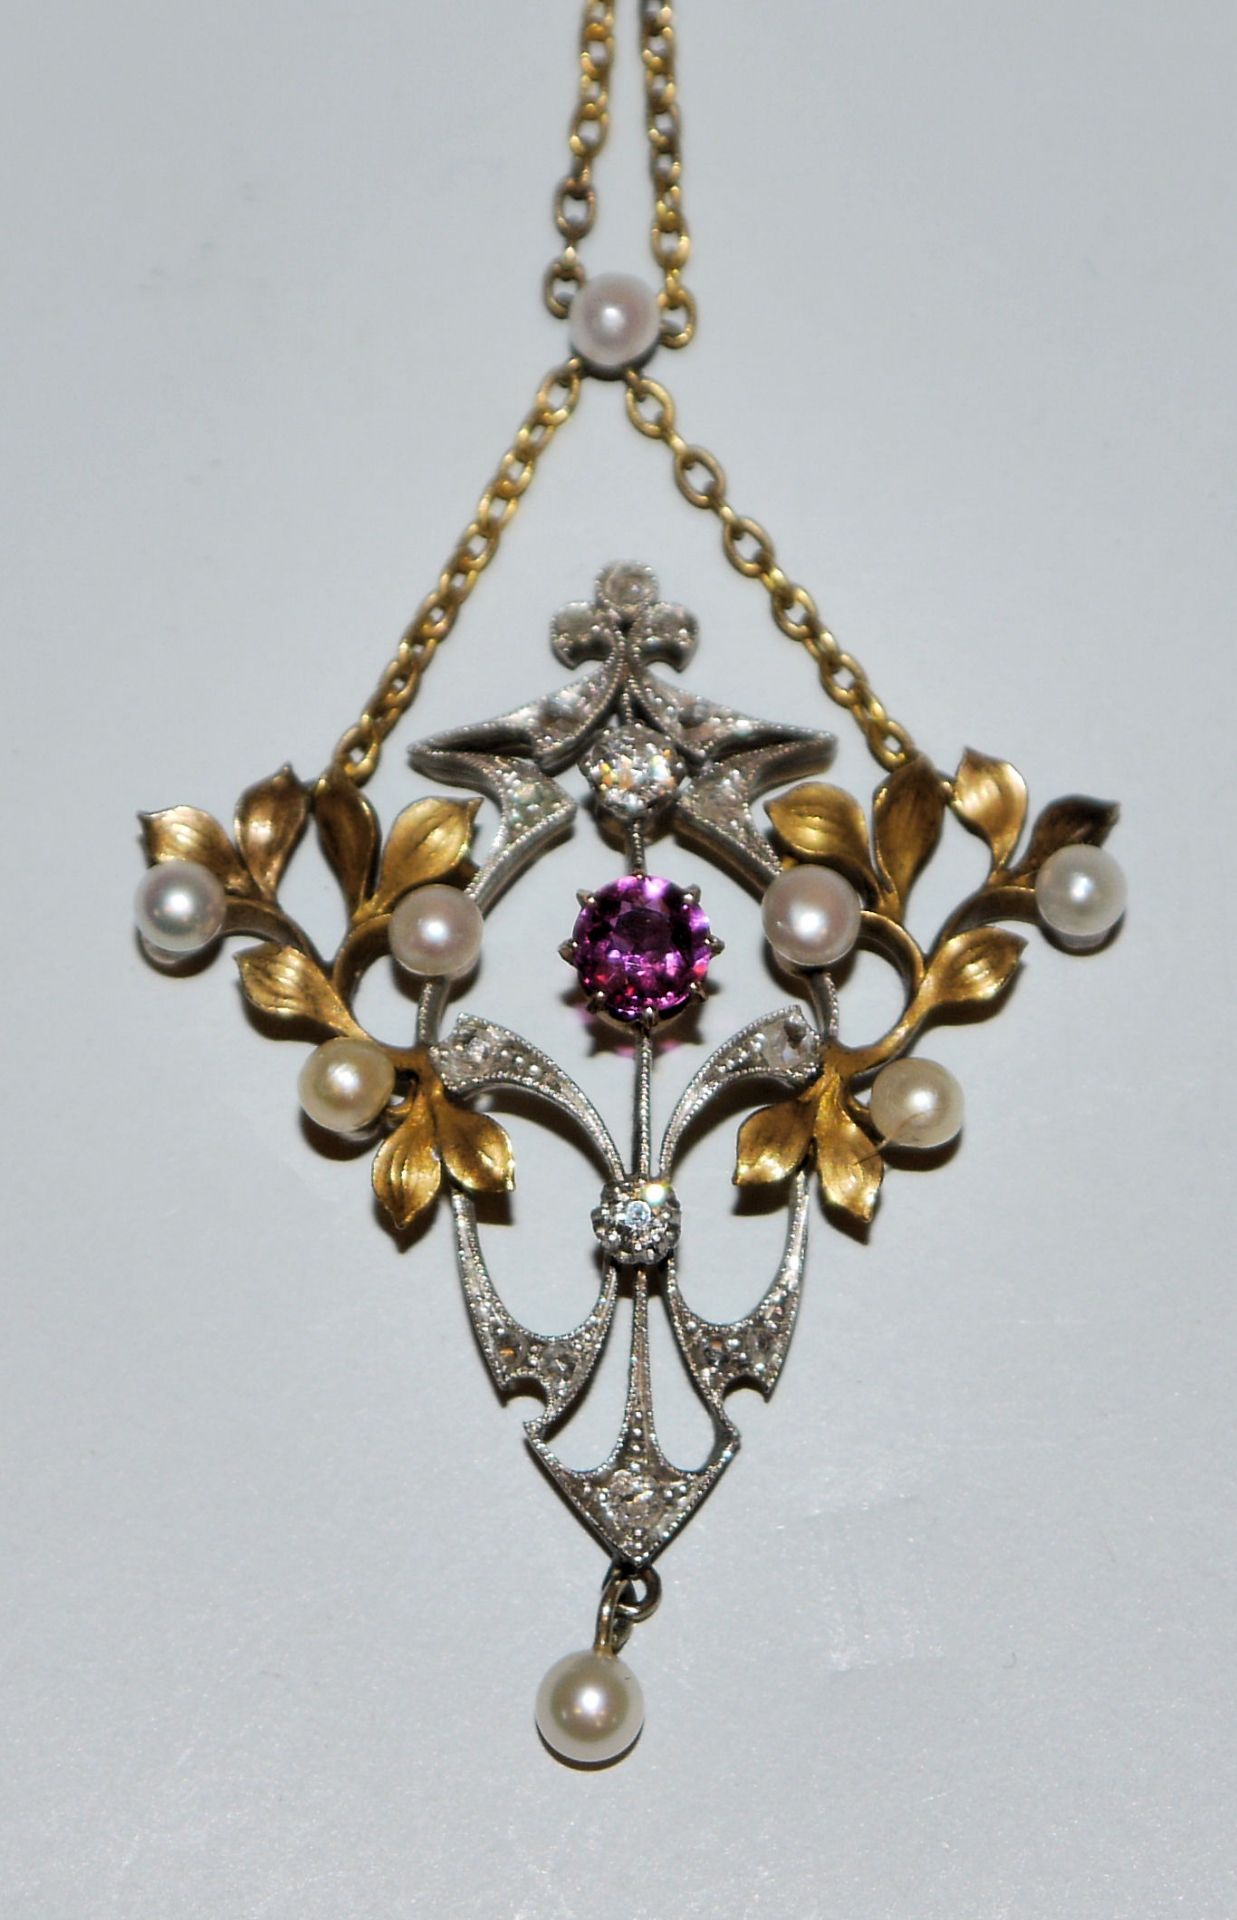 Jugendstil-Collier mit Diamanten, Rubin und Perlen, Gold, um 1900, Liebhaberstück!